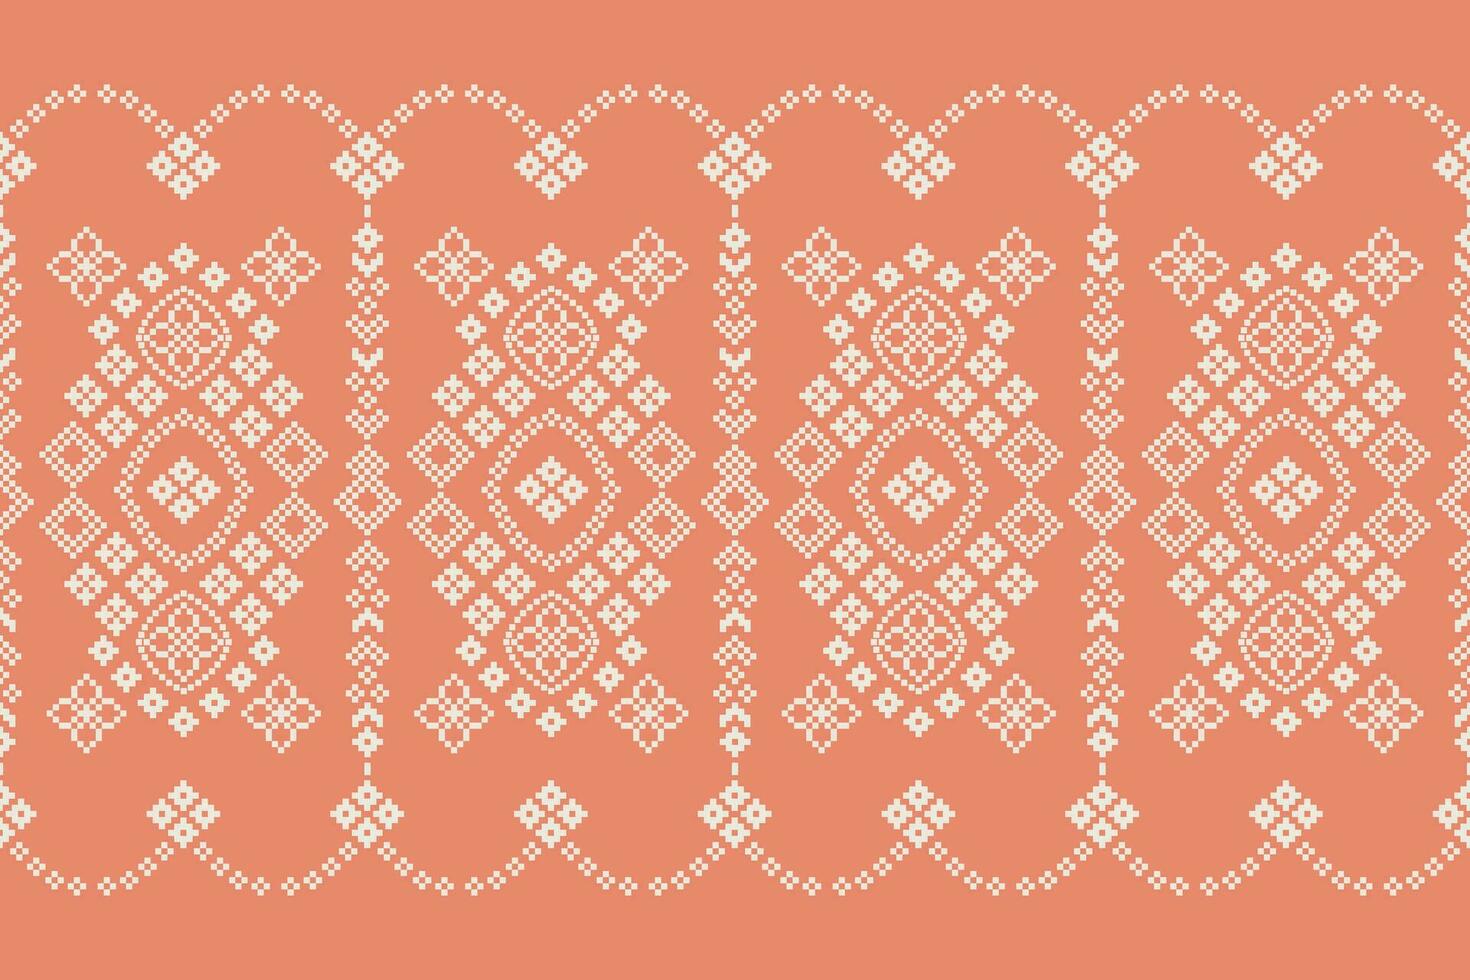 etnisch meetkundig kleding stof patroon kruis steek.ikat borduurwerk etnisch oosters pixel patroon roos goud roze achtergrond. abstract,vector,illustratie. textuur,frame,motieven,zijde,valentijn roze behang. vector